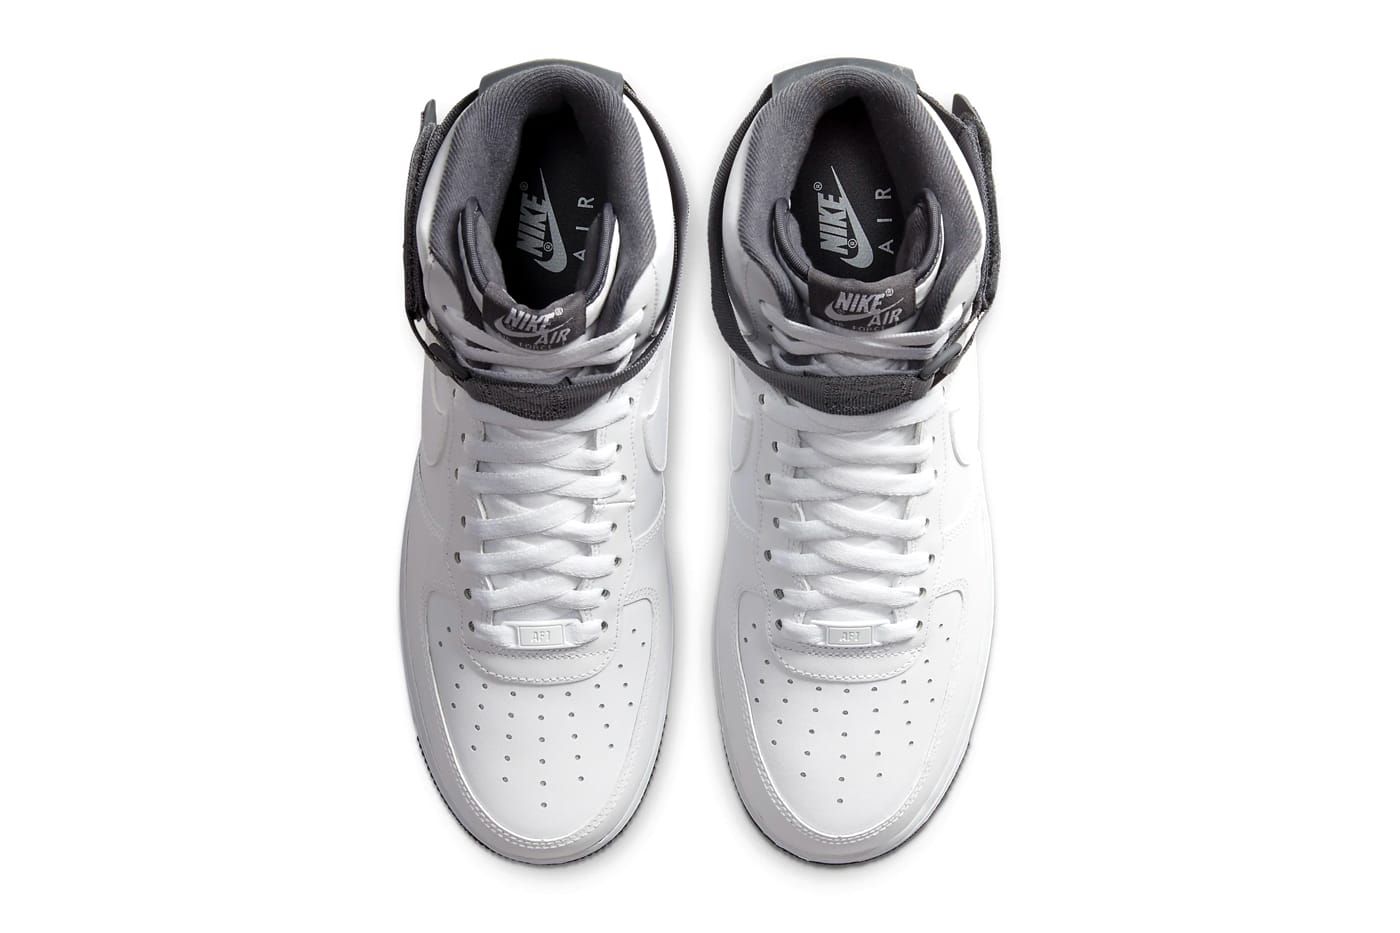 Nike Air Force 1 High '07 LV8 2 “White 